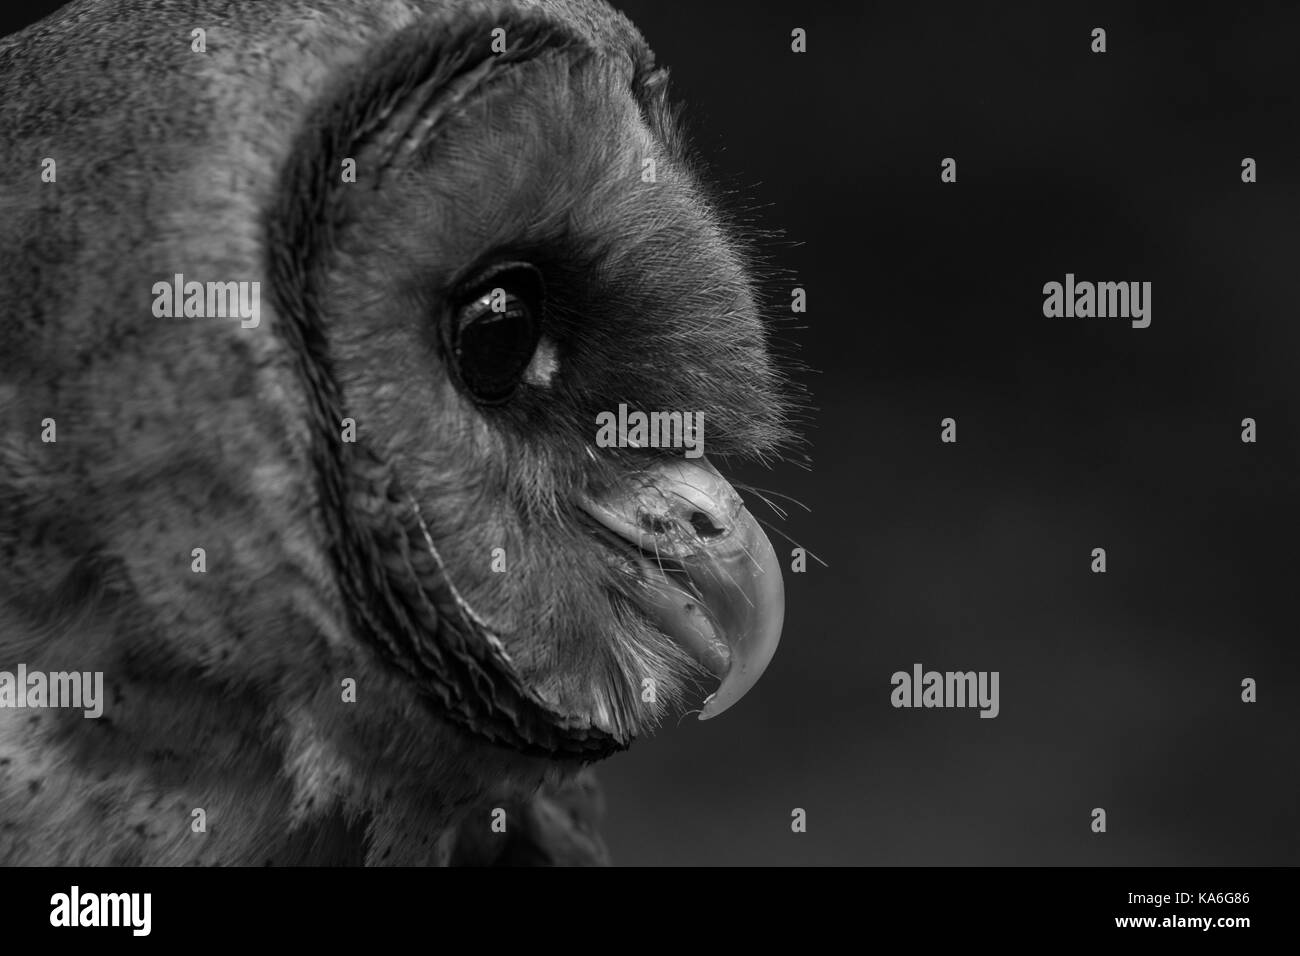 Owl testa con faccia a faccia ashy in primo piano su sfondo scuro Foto Stock